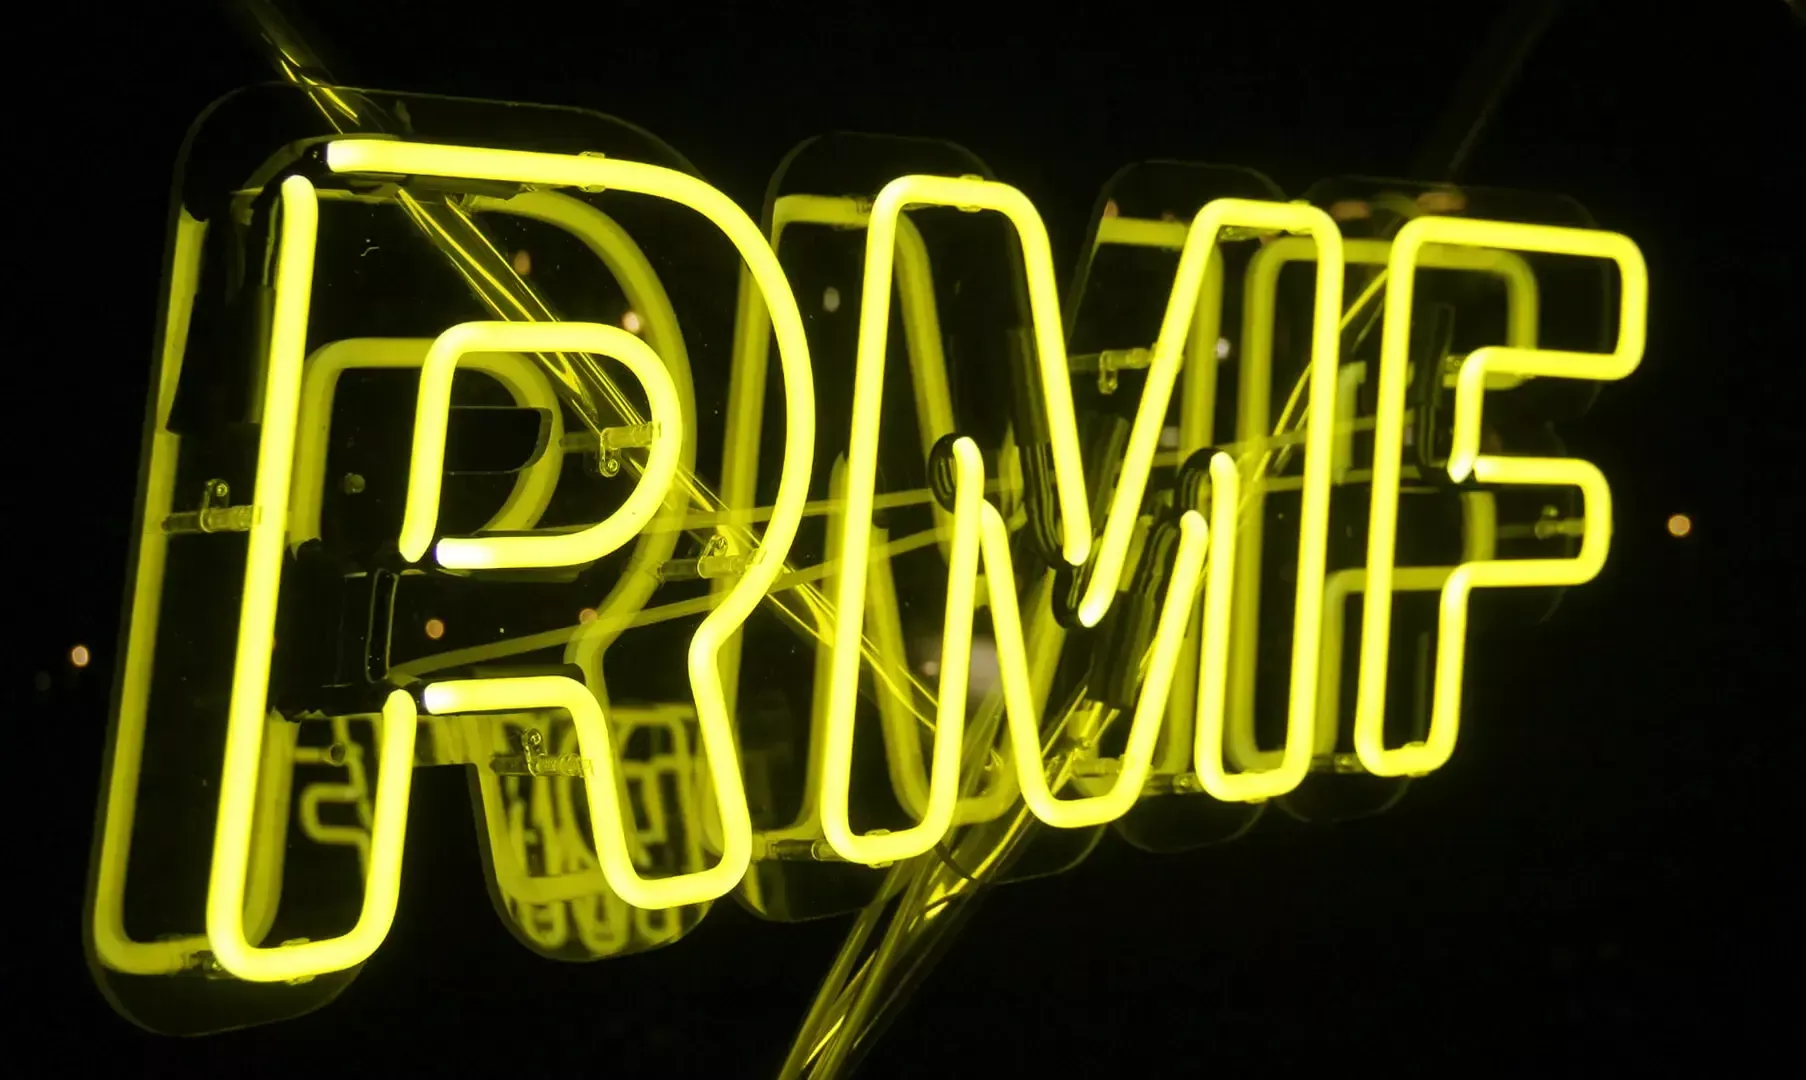 RMF - Neon giallo per Radio RMF, pubblicità al neon.